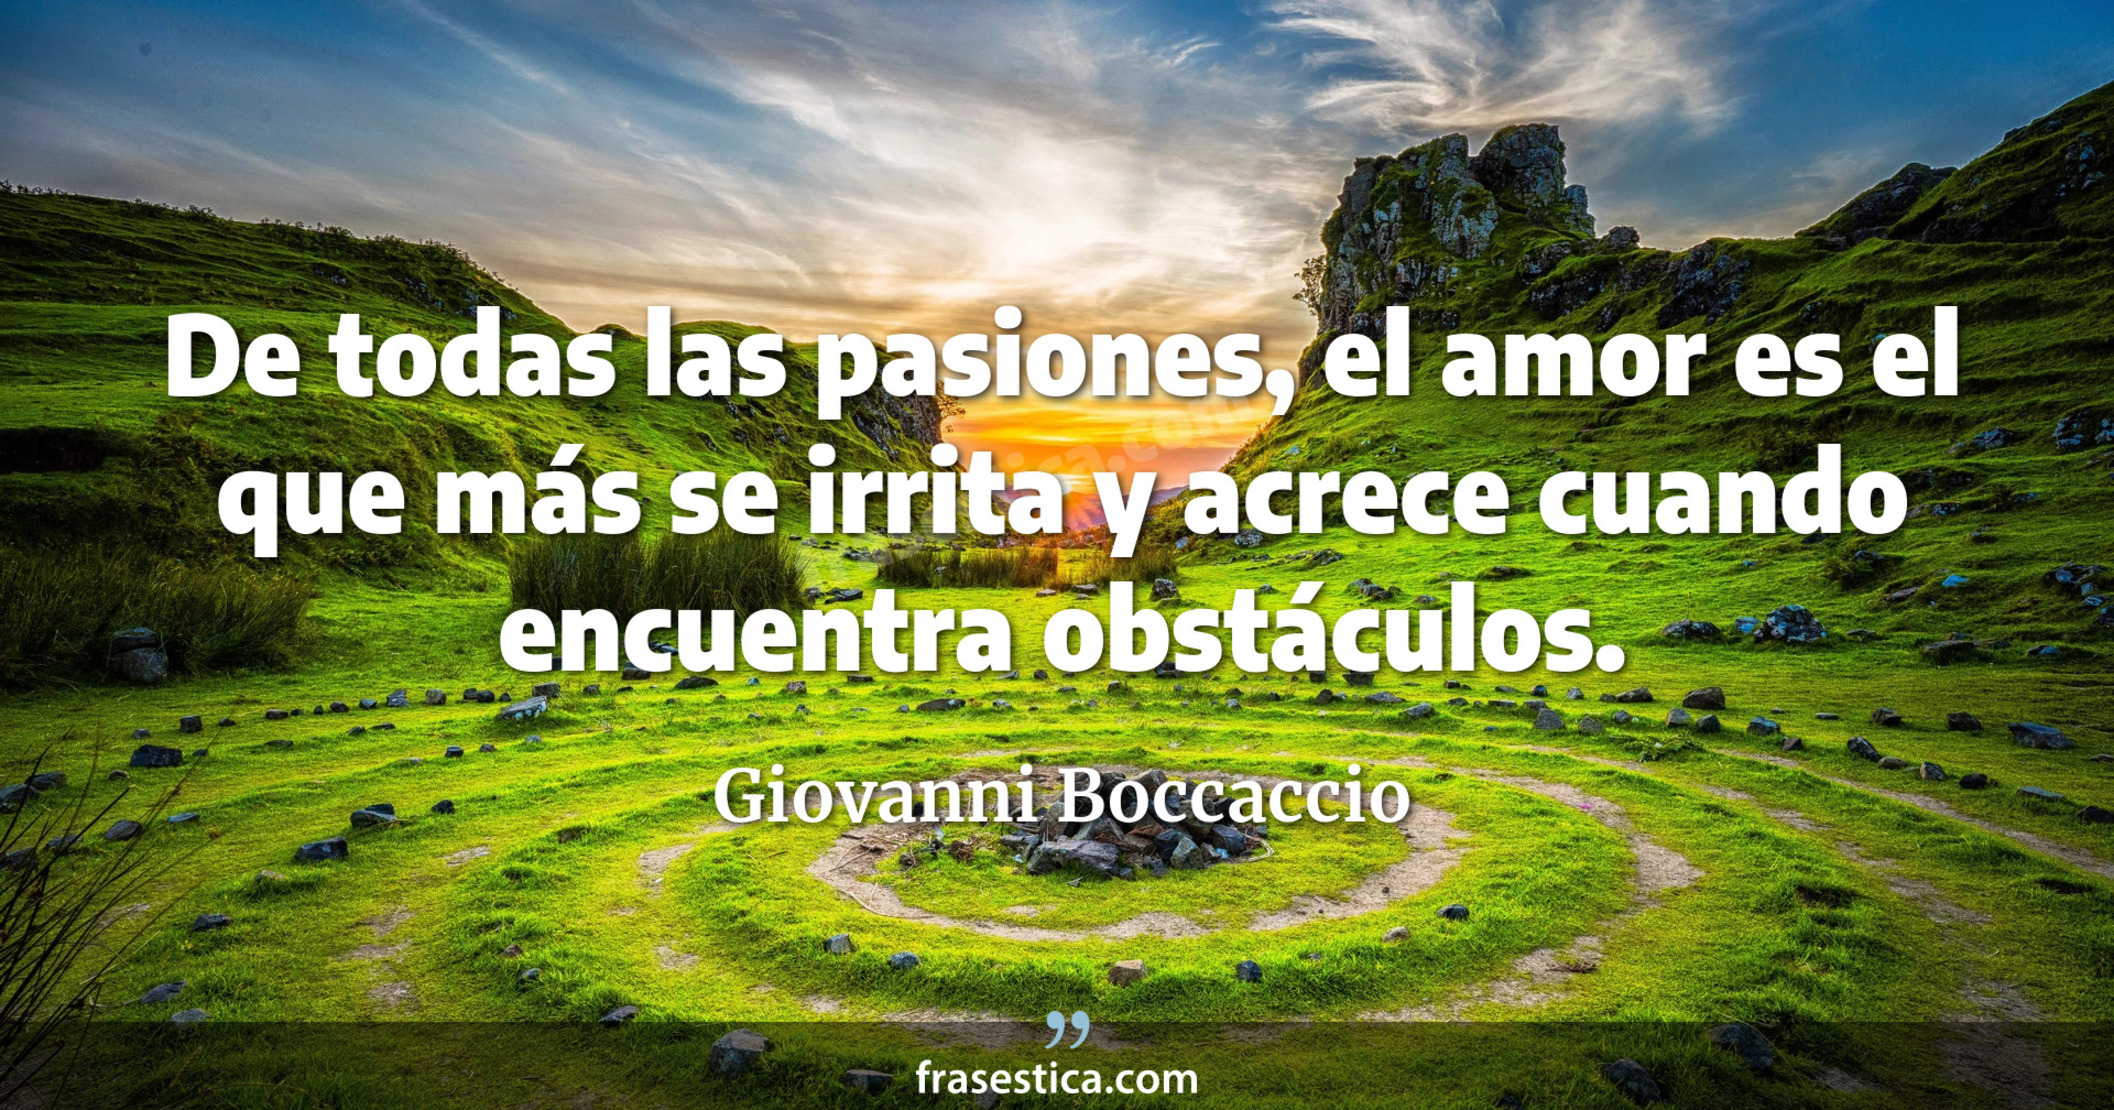 De todas las pasiones, el amor es el que más se irrita y acrece cuando encuentra obstáculos. - Giovanni Boccaccio